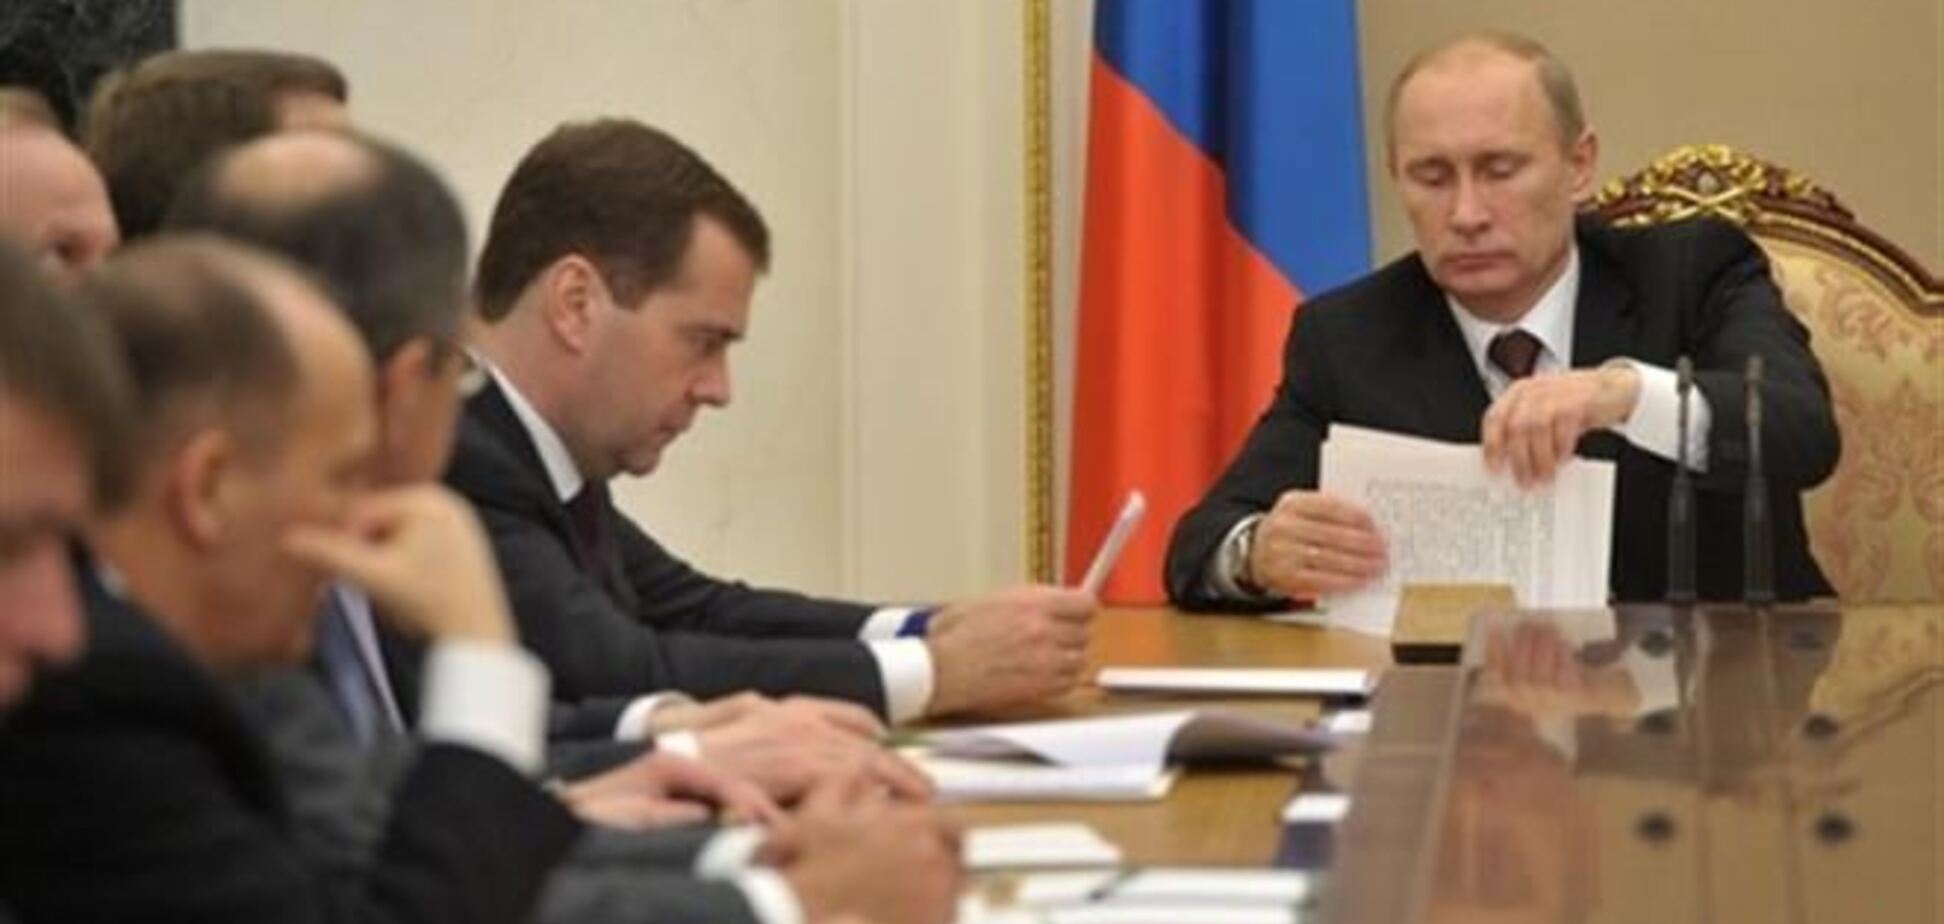 Путин в ближайшее время может уволить Медведева - СМИ